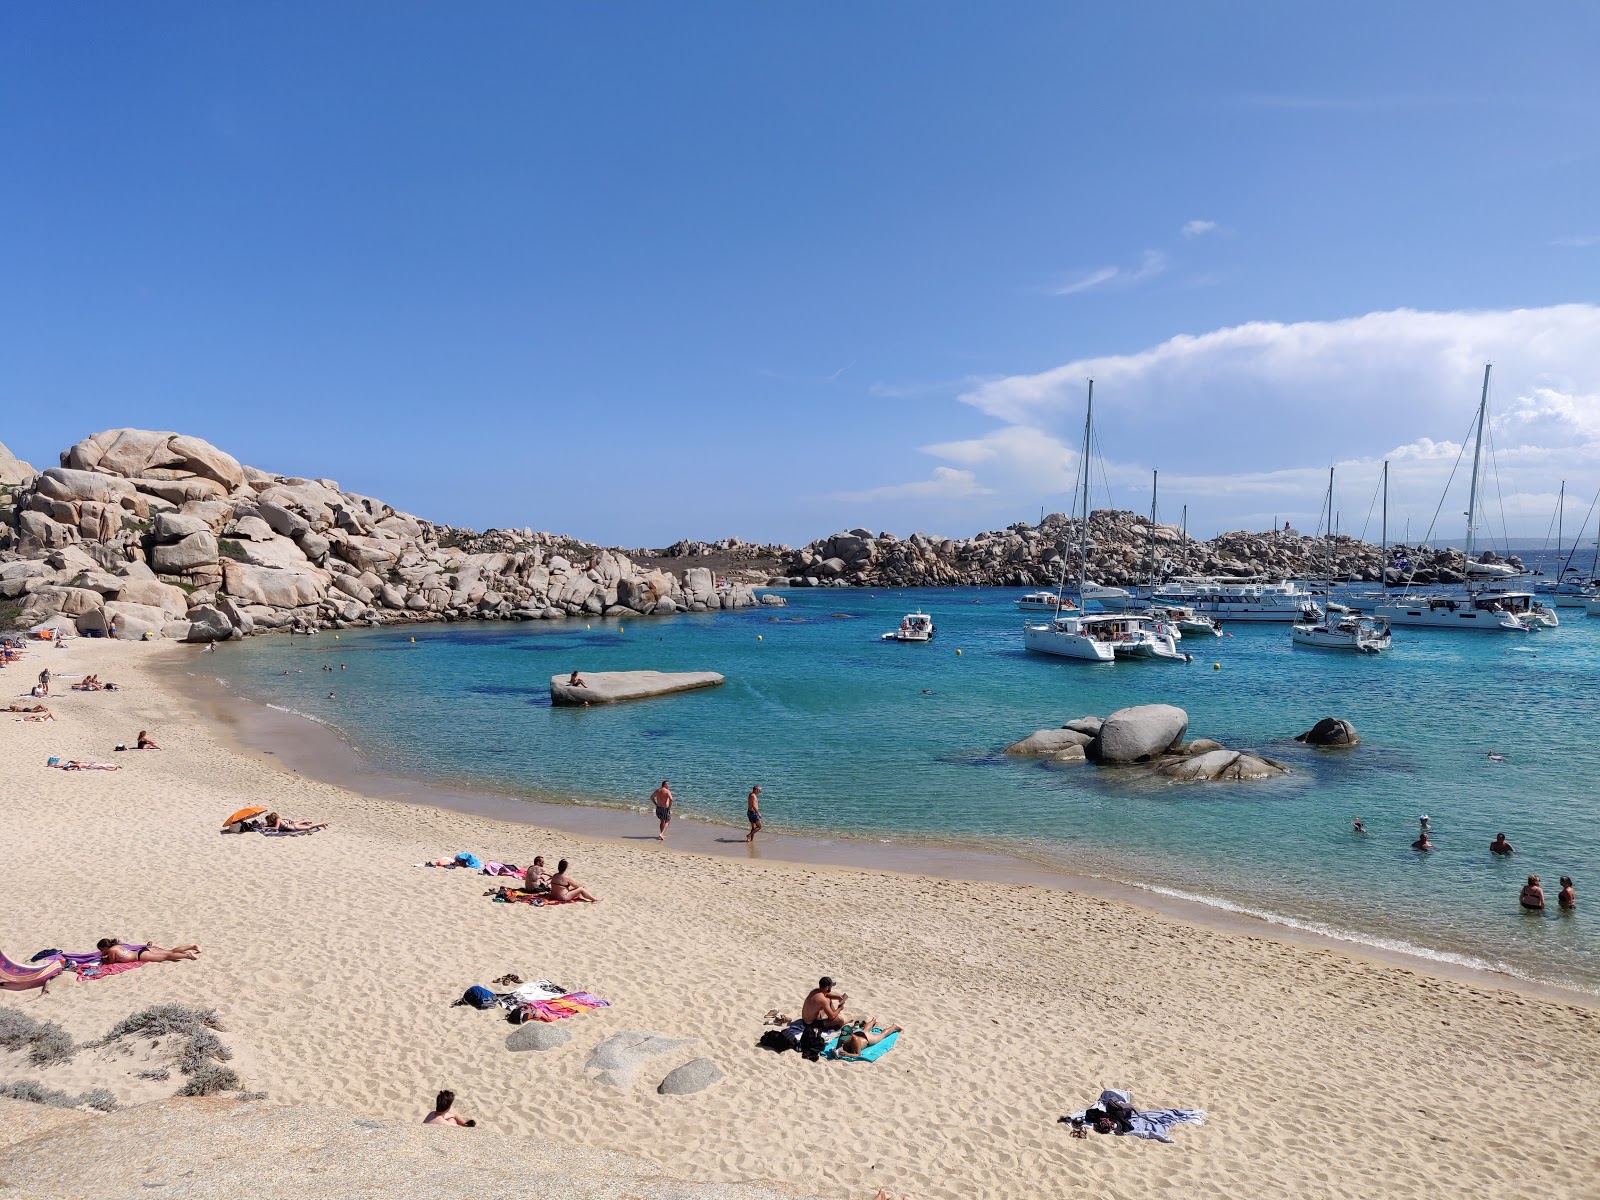 Cala Giunco Plajı'in fotoğrafı parlak ince kum yüzey ile